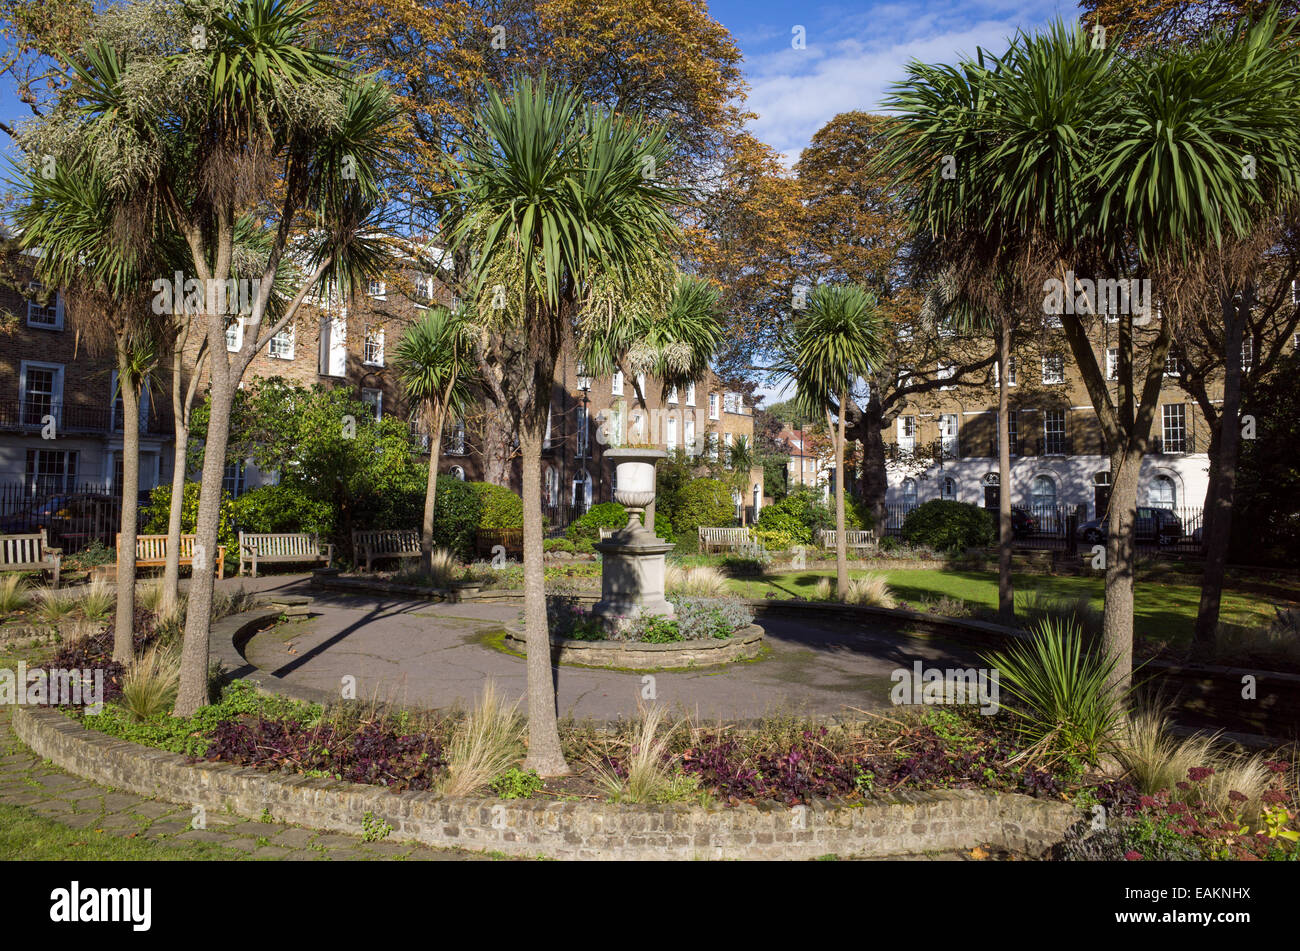 Canonbury Square Gardens, Islington, London, England, UK Banque D'Images